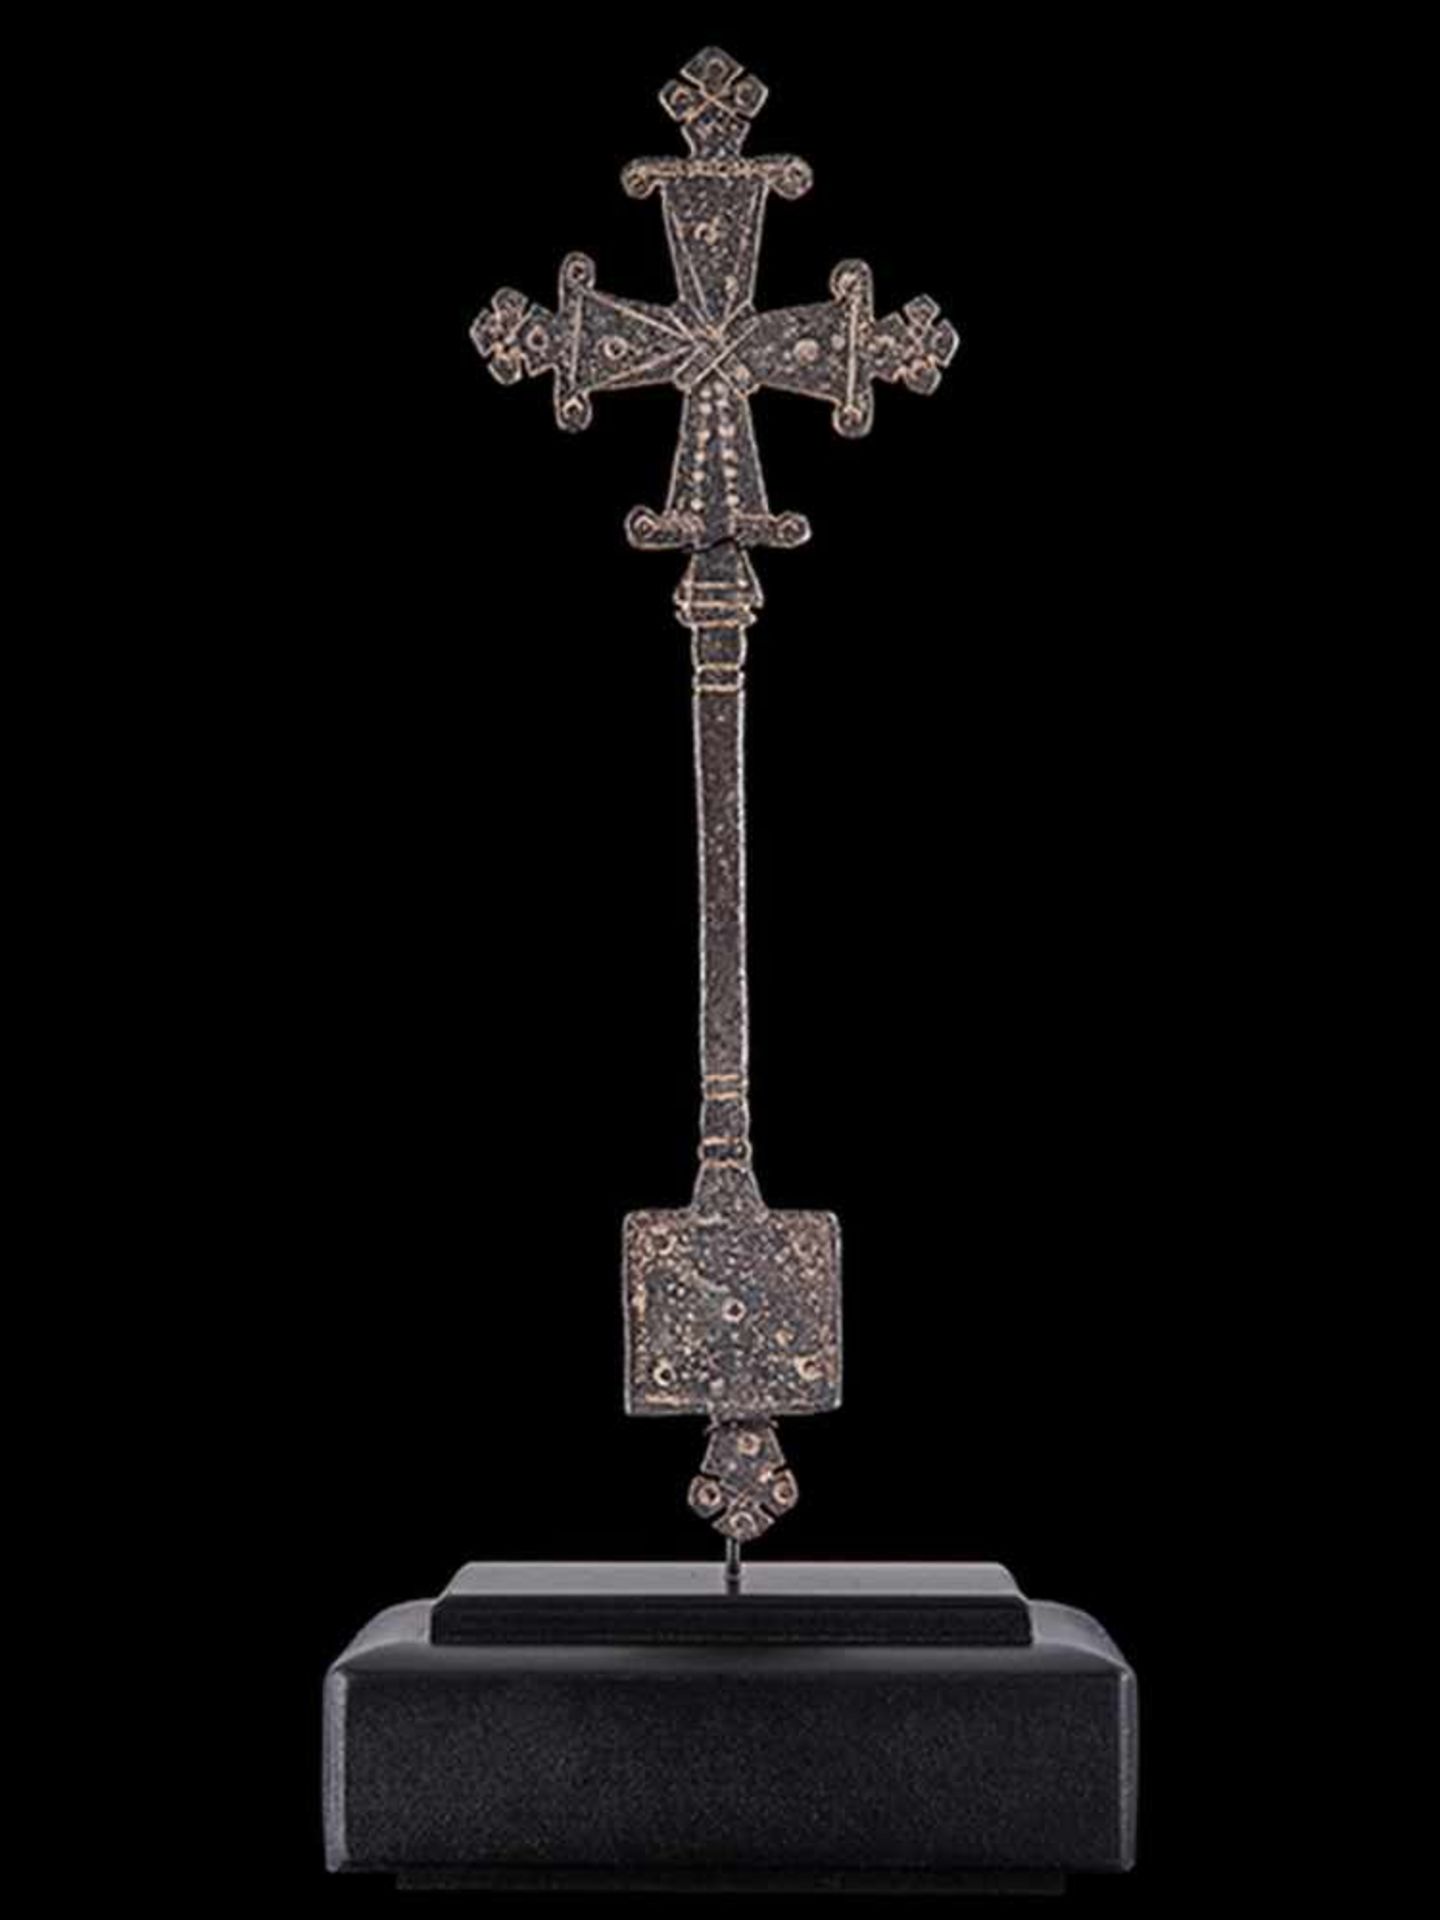 Äthiopisches Segenskreuz Höhe: 21,5 cm. Äthiopien, 19. Jahrhundert. Eisenbronze, geschmiedet, - Bild 2 aus 3